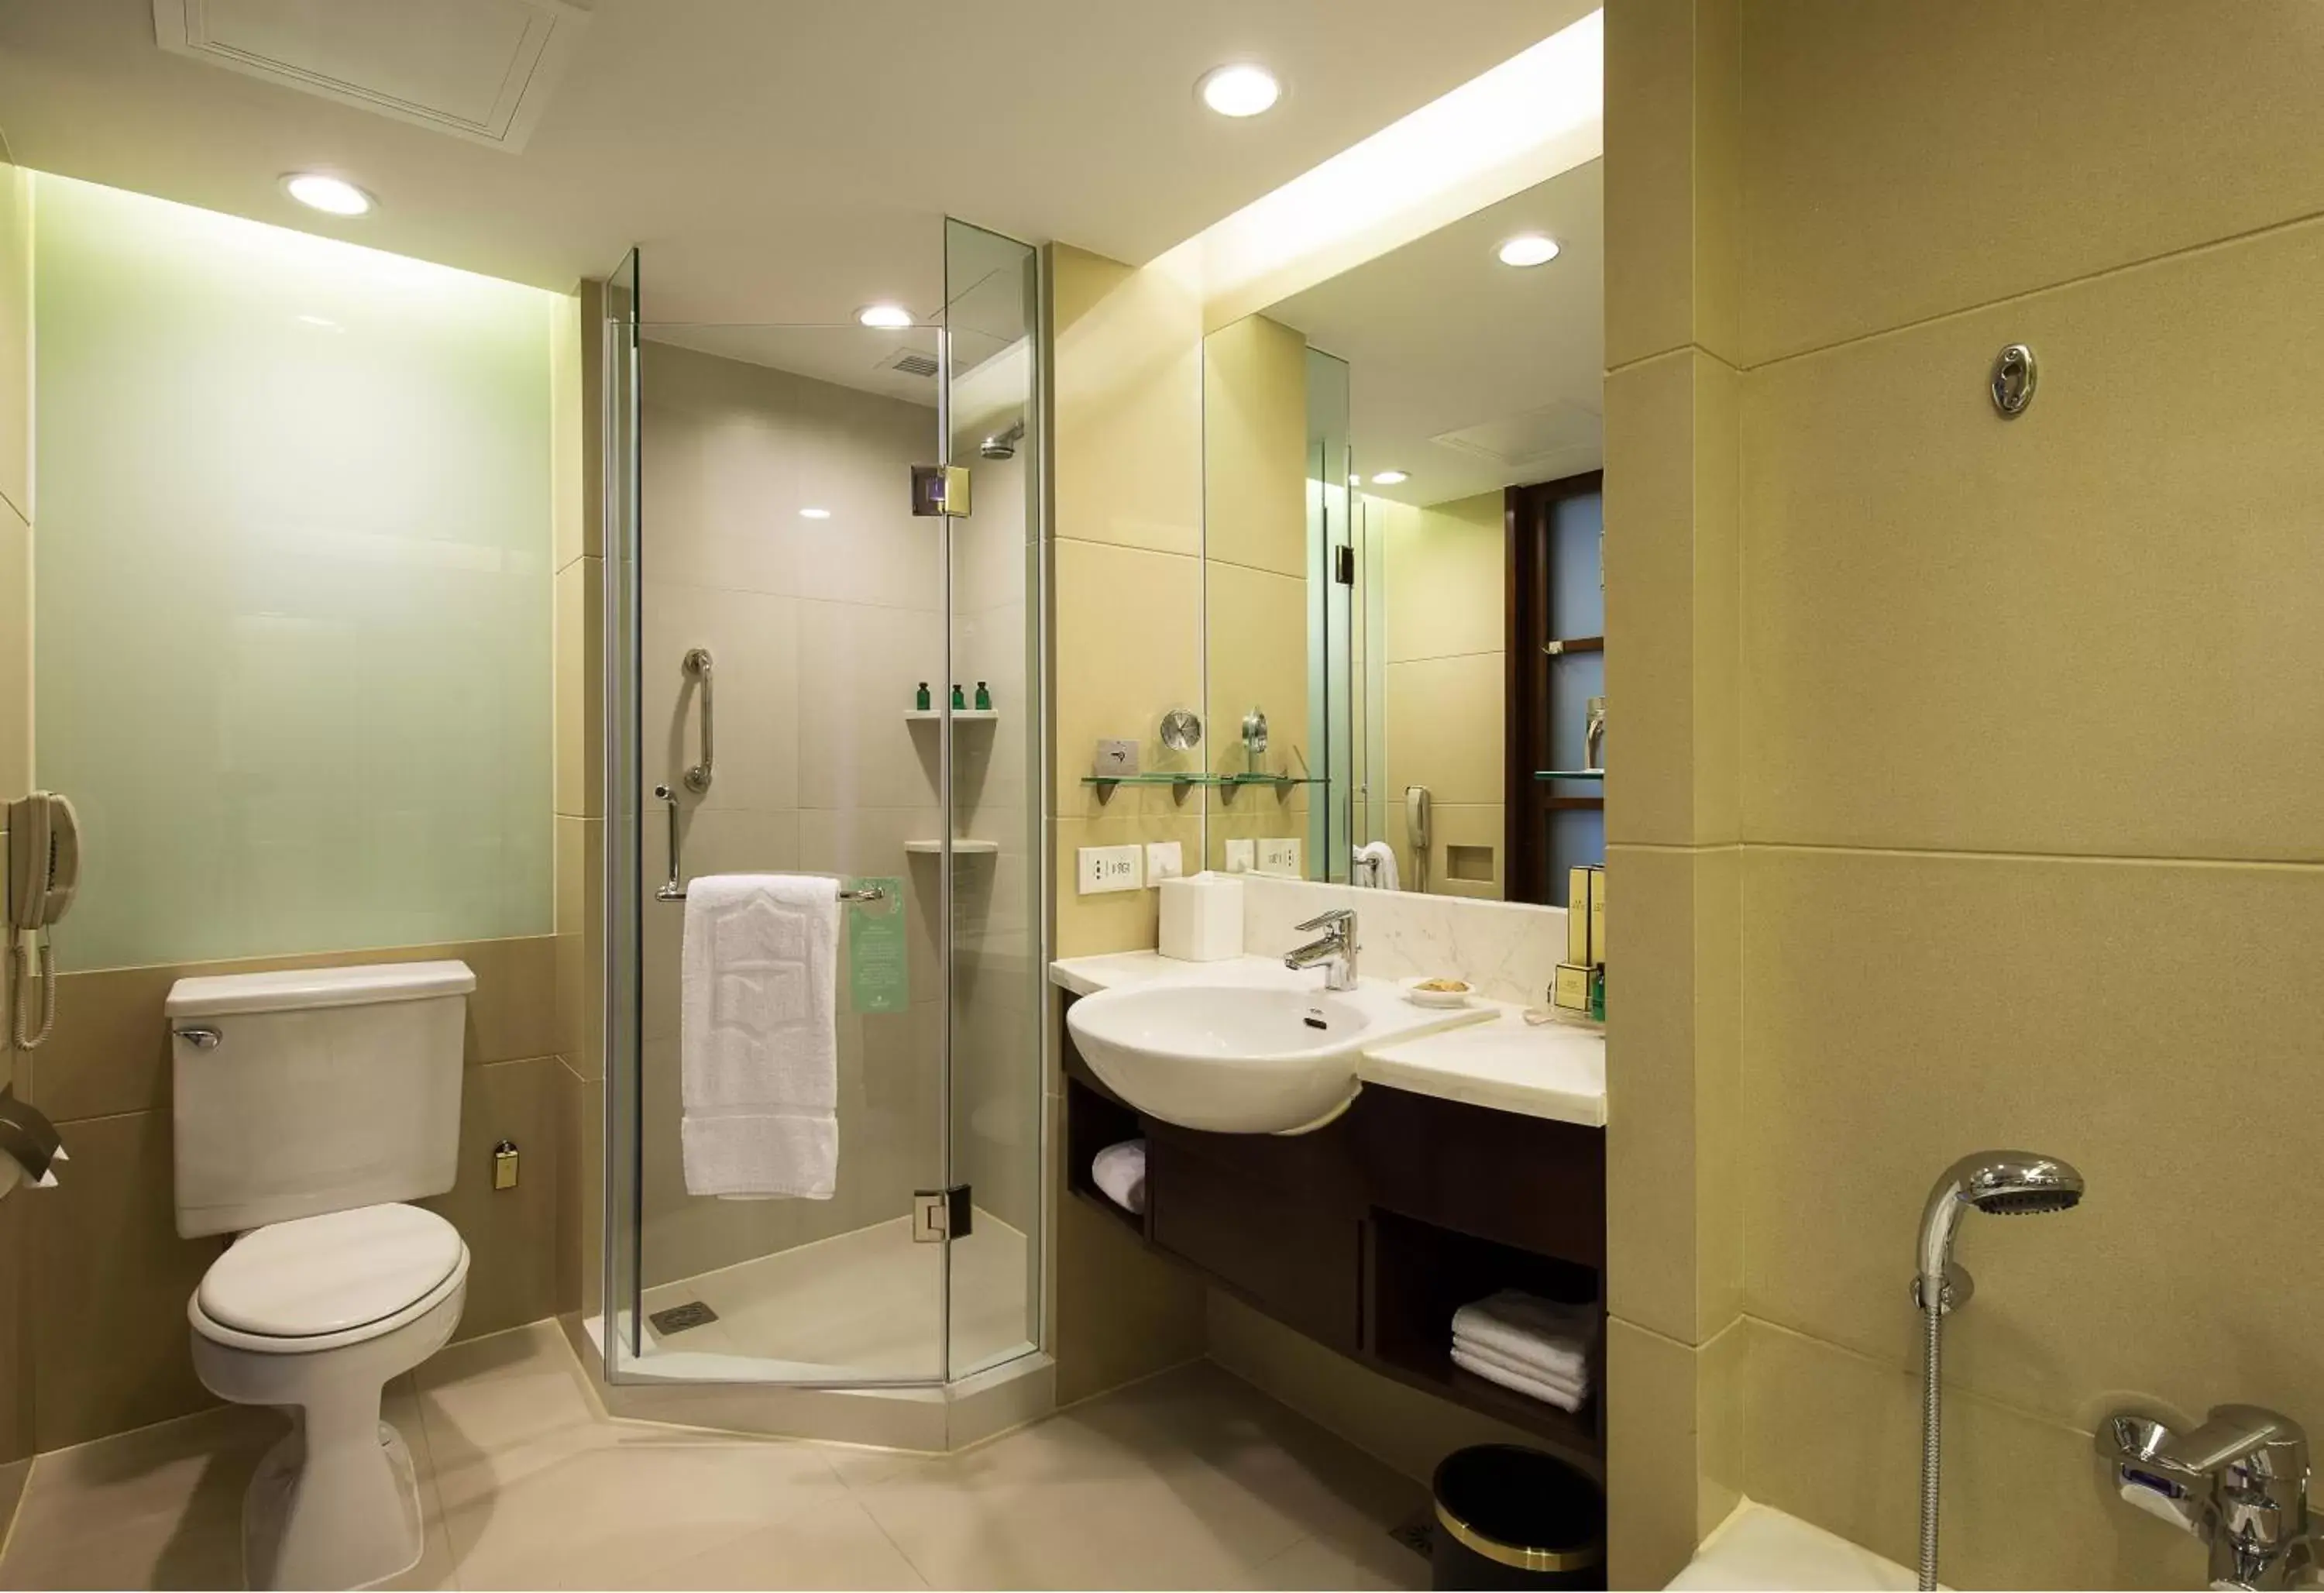 Toilet, Bathroom in Shangri-La Qingdao - May Fourth Square